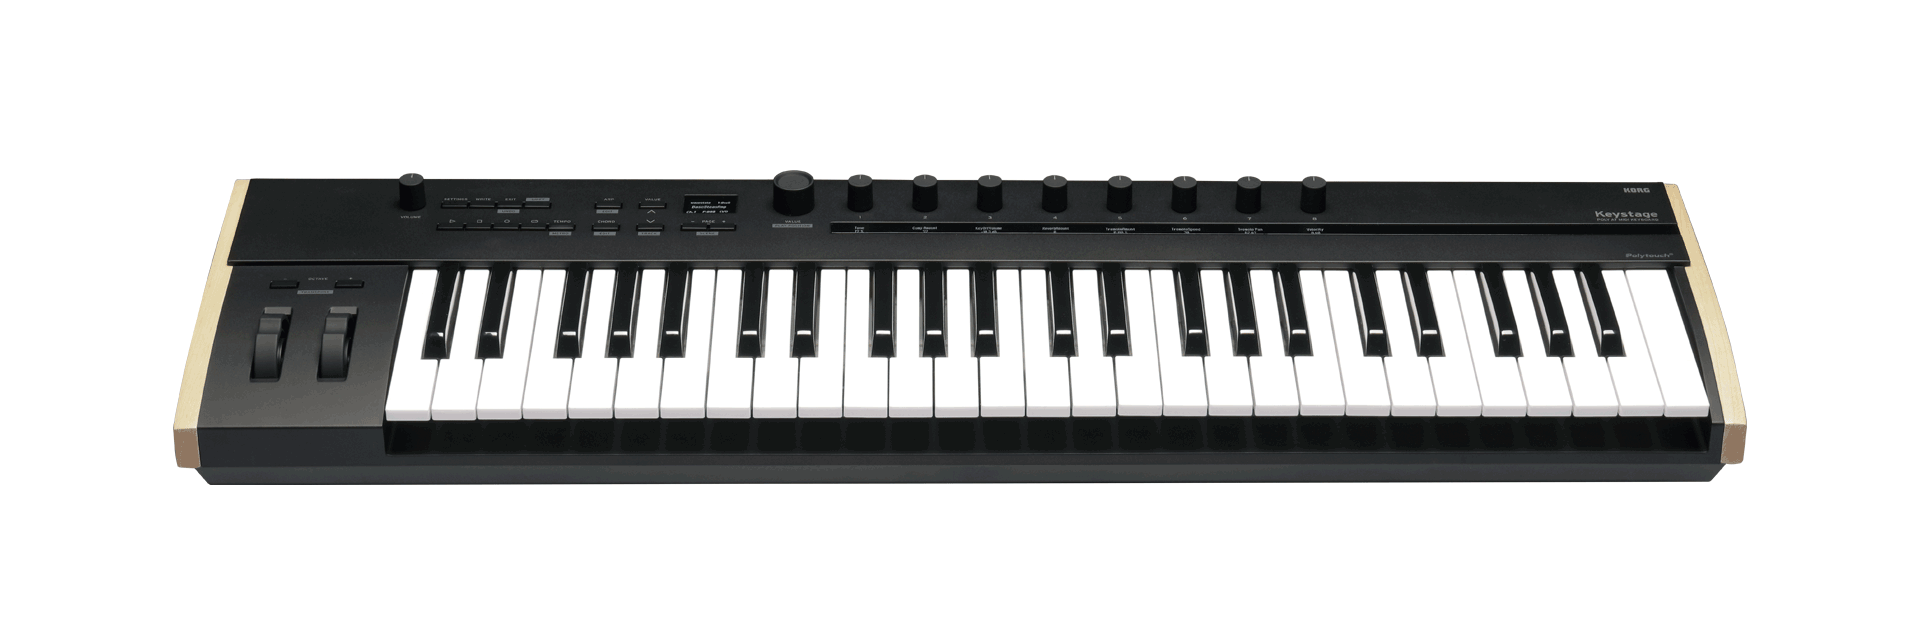 Korg Keystage Poly at MIDI Keyboard (49 Keys / 61 Keys)